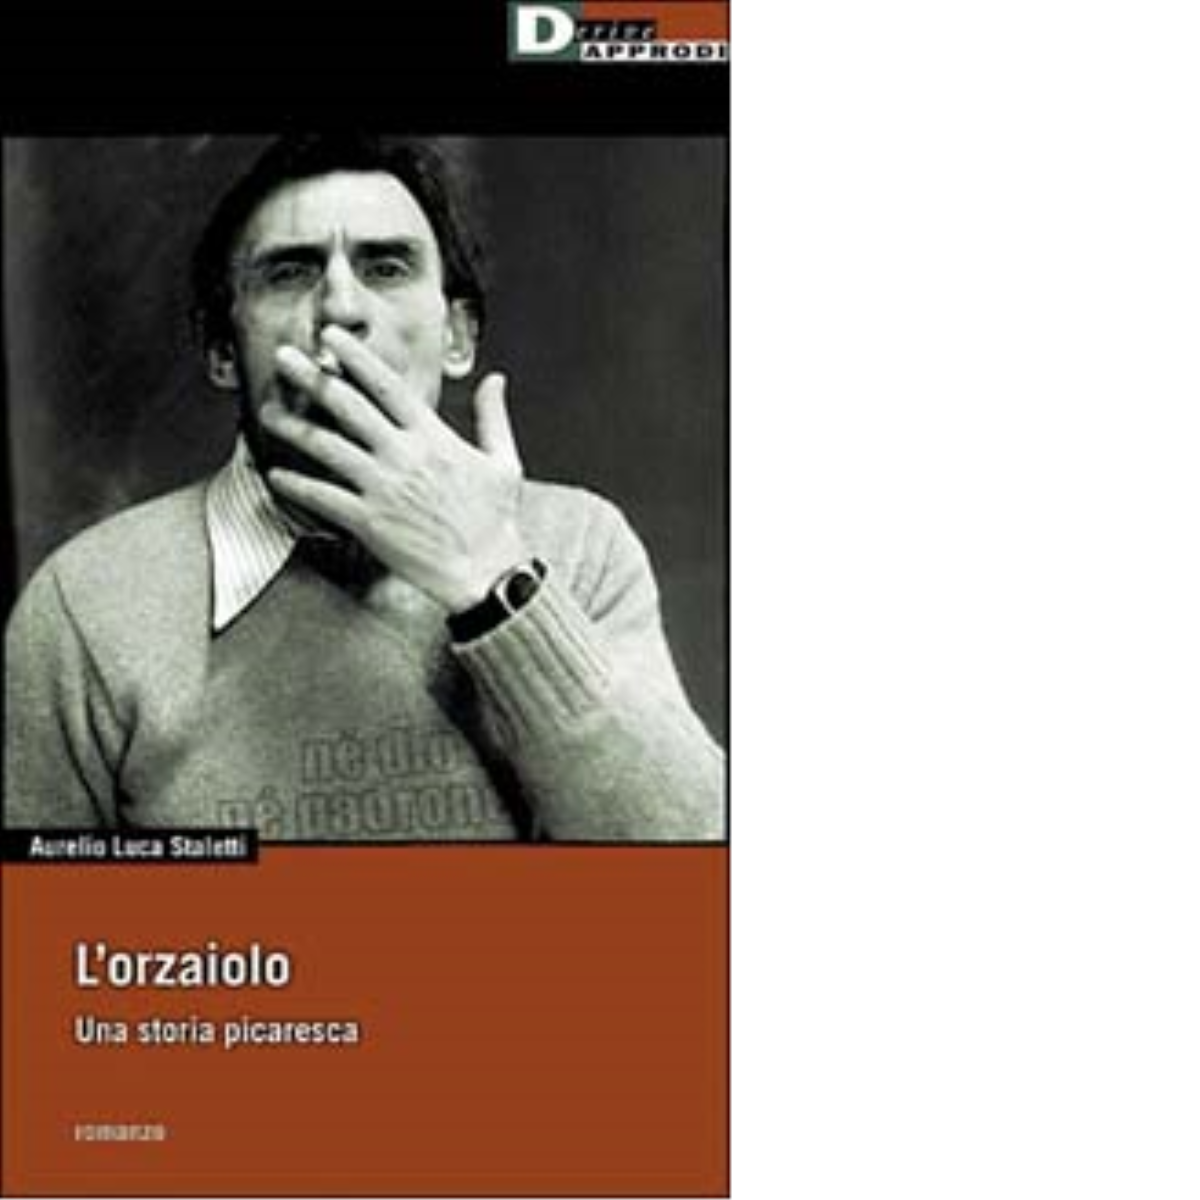 ORZAIOLO. di AURELIO LUCA STALETTI - DeriveApprodi editore, 2001